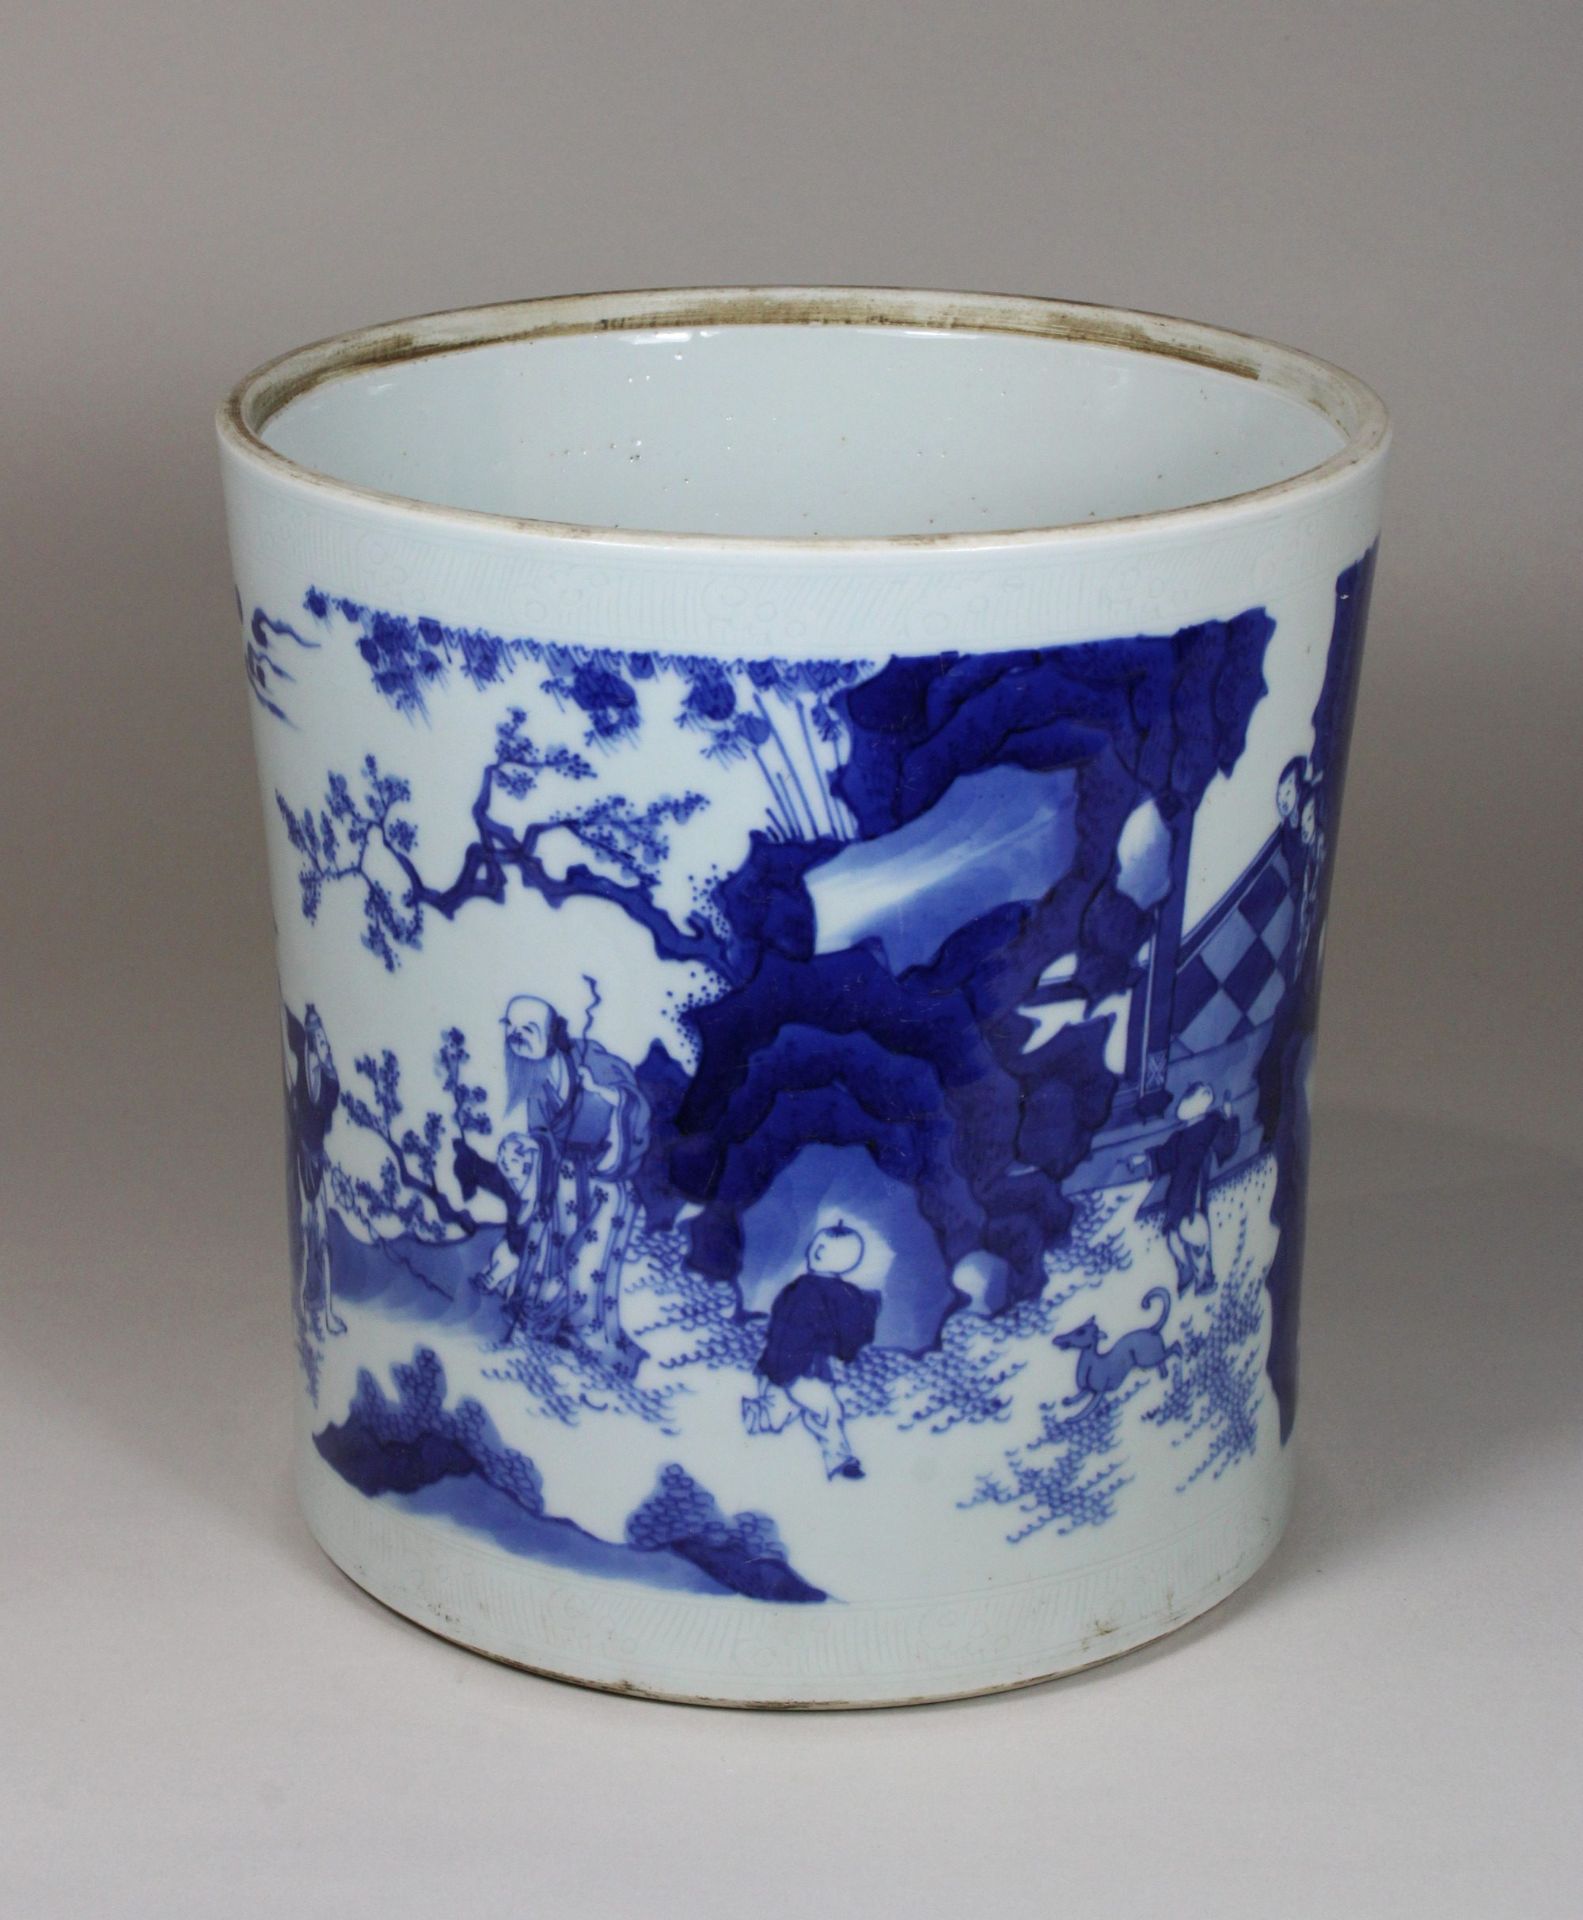 China, großer Pinselbecher, in Blau - Weiß, florale und figürliche Darstellung, Dm 21, H 22, - Image 4 of 4